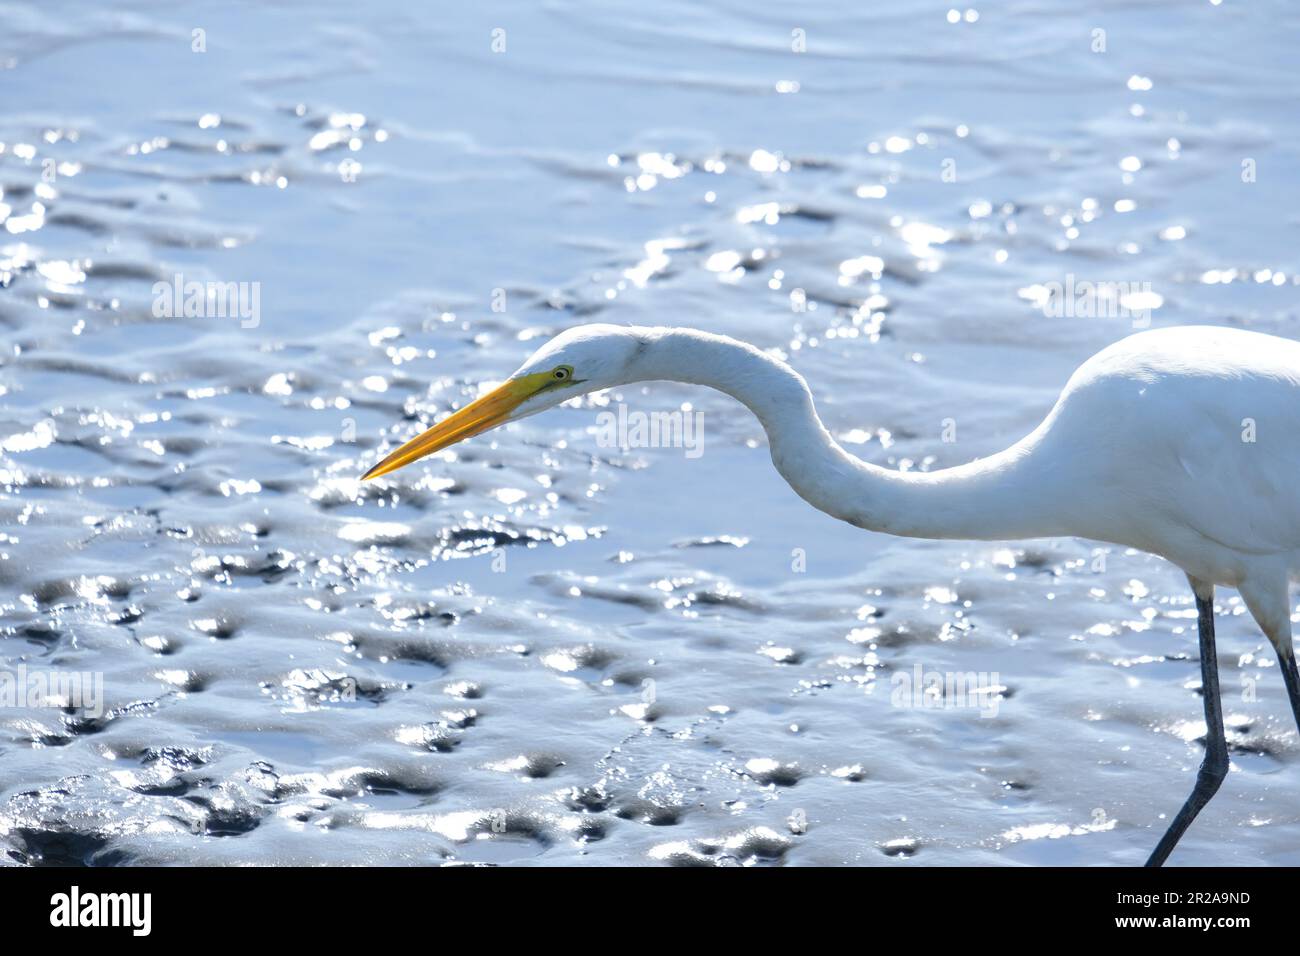 Pájaro de garza de pierna larga caza de presa de pie en el lago de agua. Pájaro de la garza mirando su caza en el agua. Pájaro en posición de caza. Foto de stock